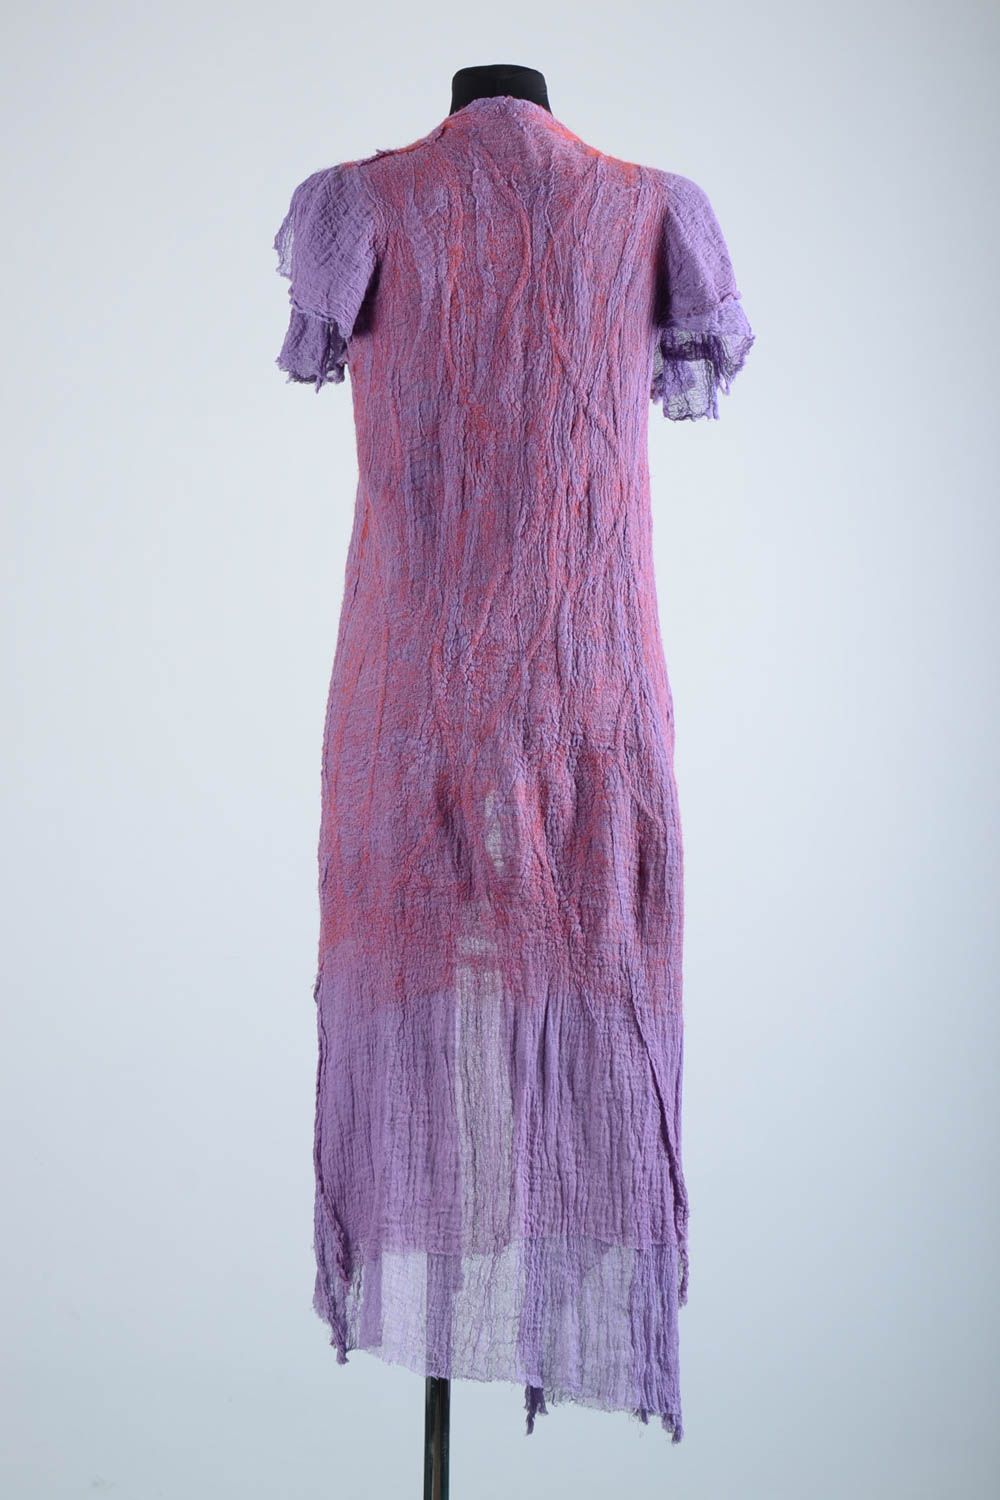 Manteau été femme fait main Manteau laine violet manches courtes Vêtement femme photo 4